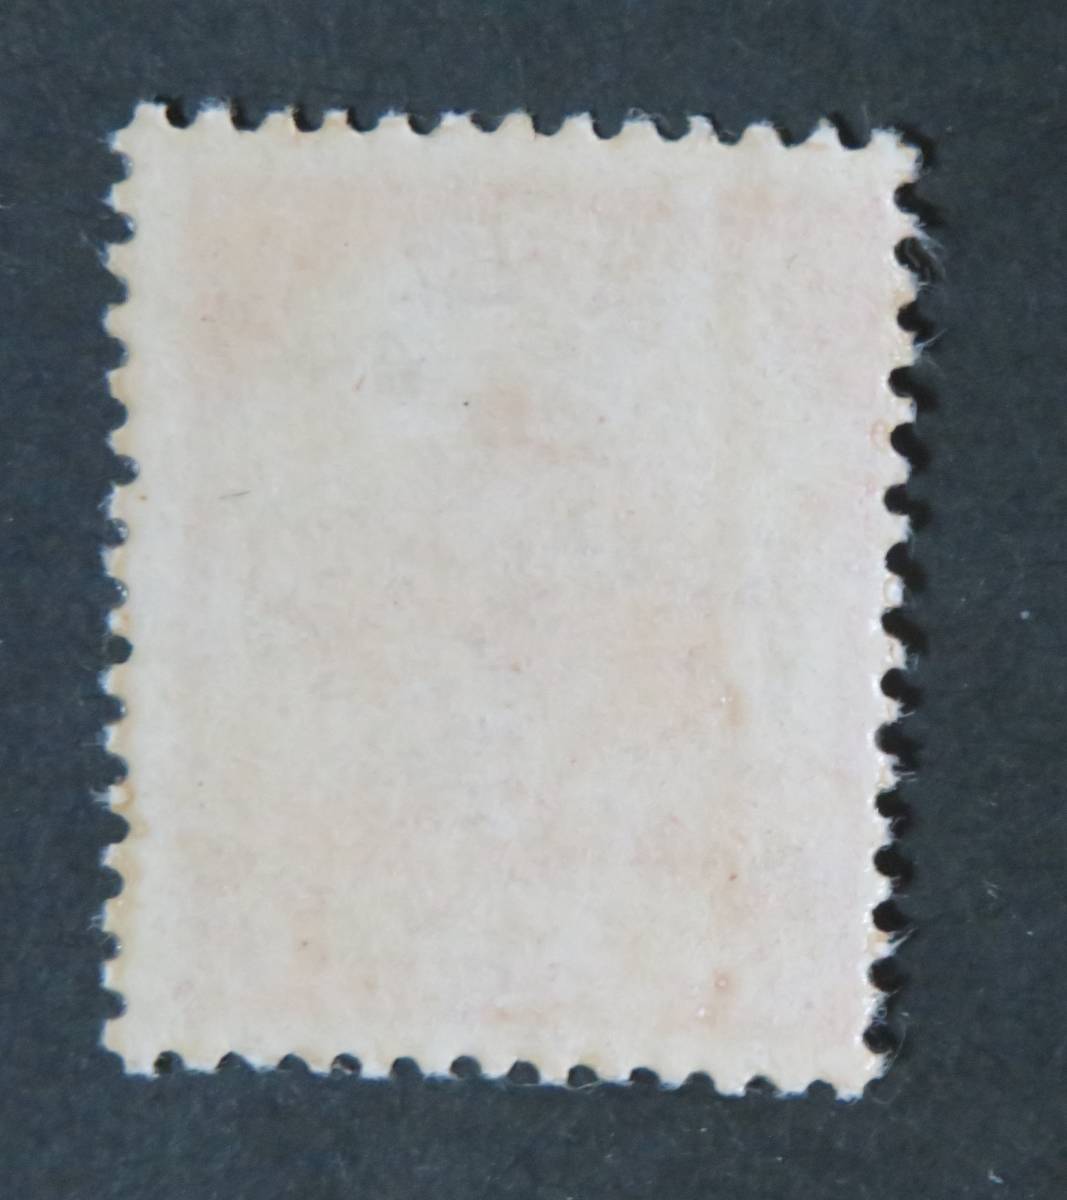 【南方占領地切手・ビルマ：未使用】風物図案切手 ゾウ 5c [評価○美品]の画像2